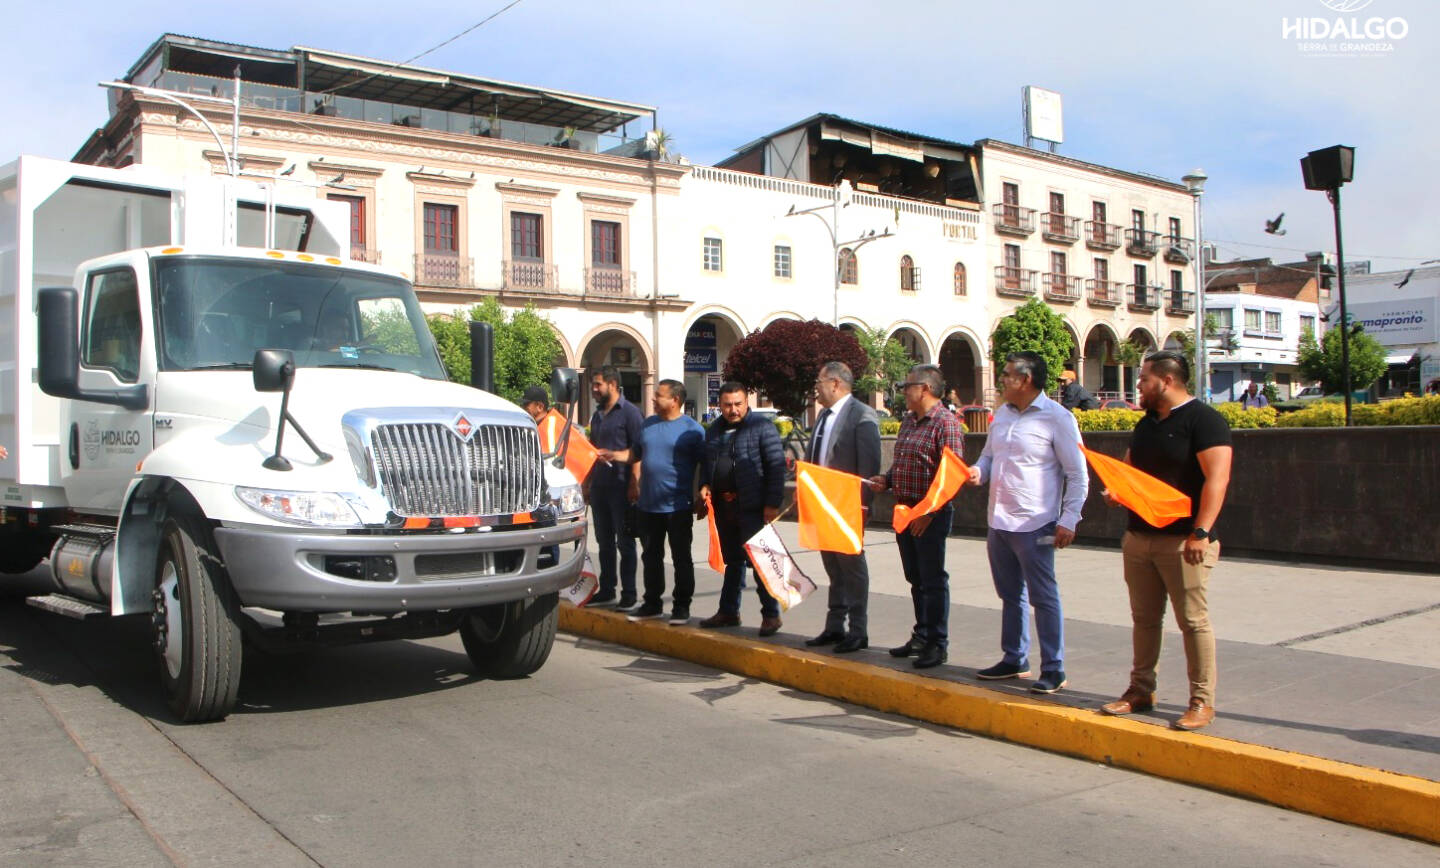 Refuerzan el servicio de recolección de basura en Ciudad Hidalgo con la adquisición de dos nuevos camiones recolectores.